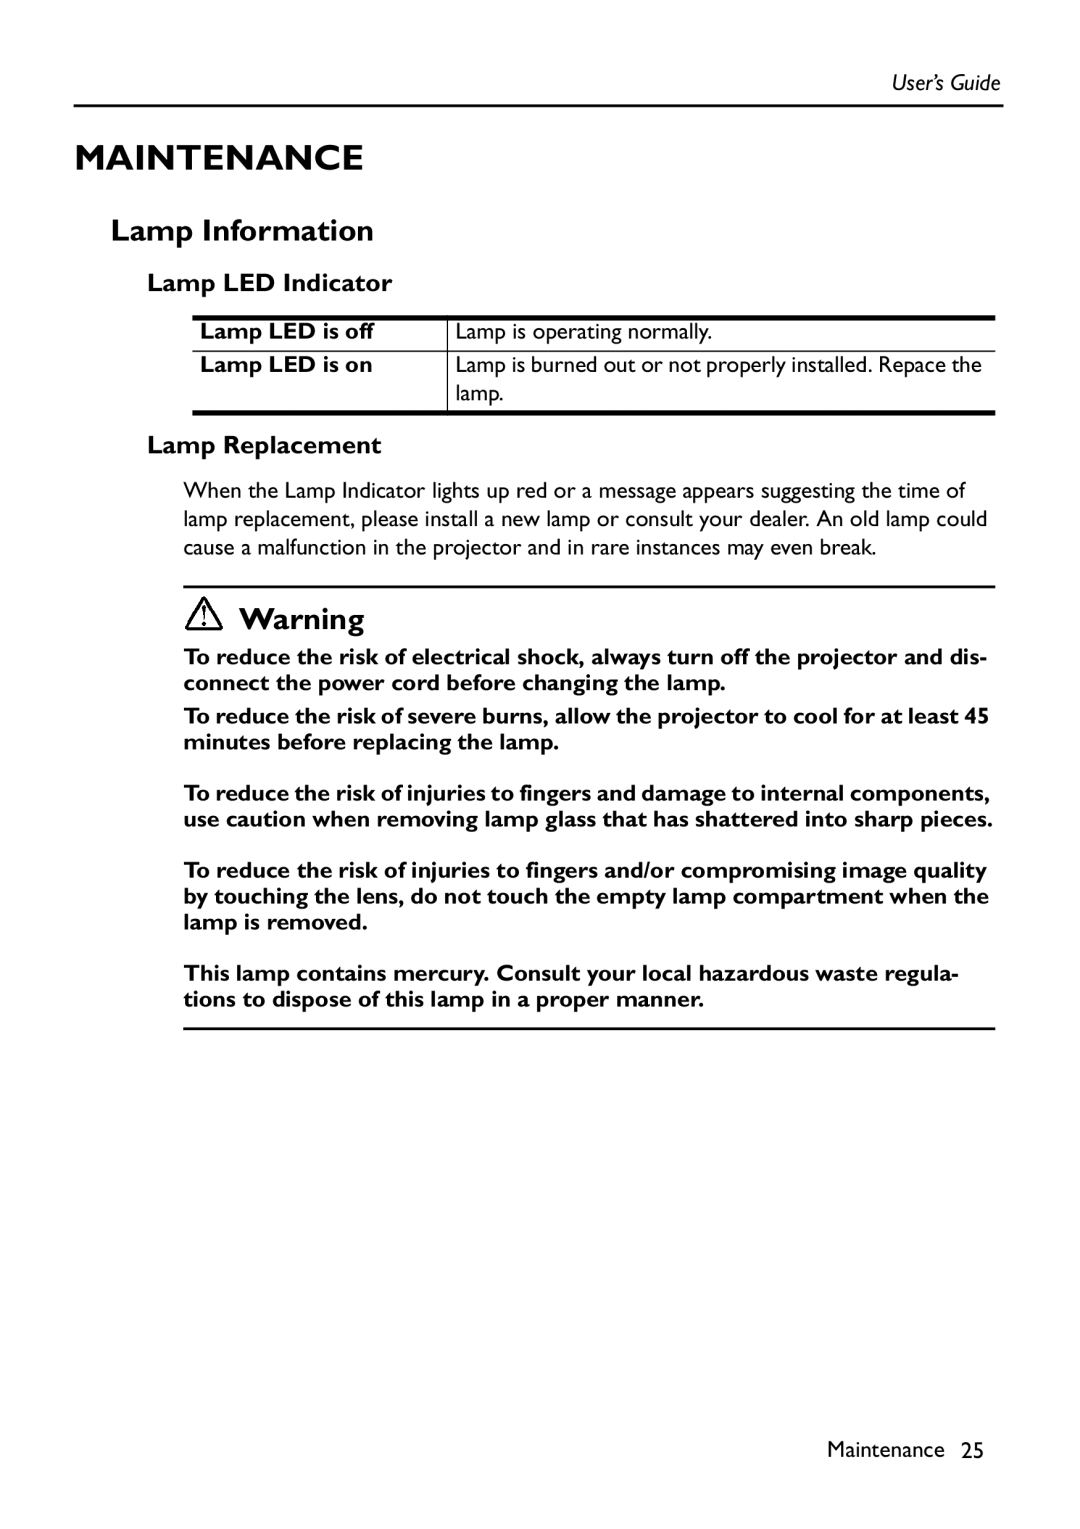 HP Vp6111 manual Maintenance, Lamp Information, Lamp LED Indicator, Lamp Replacement 